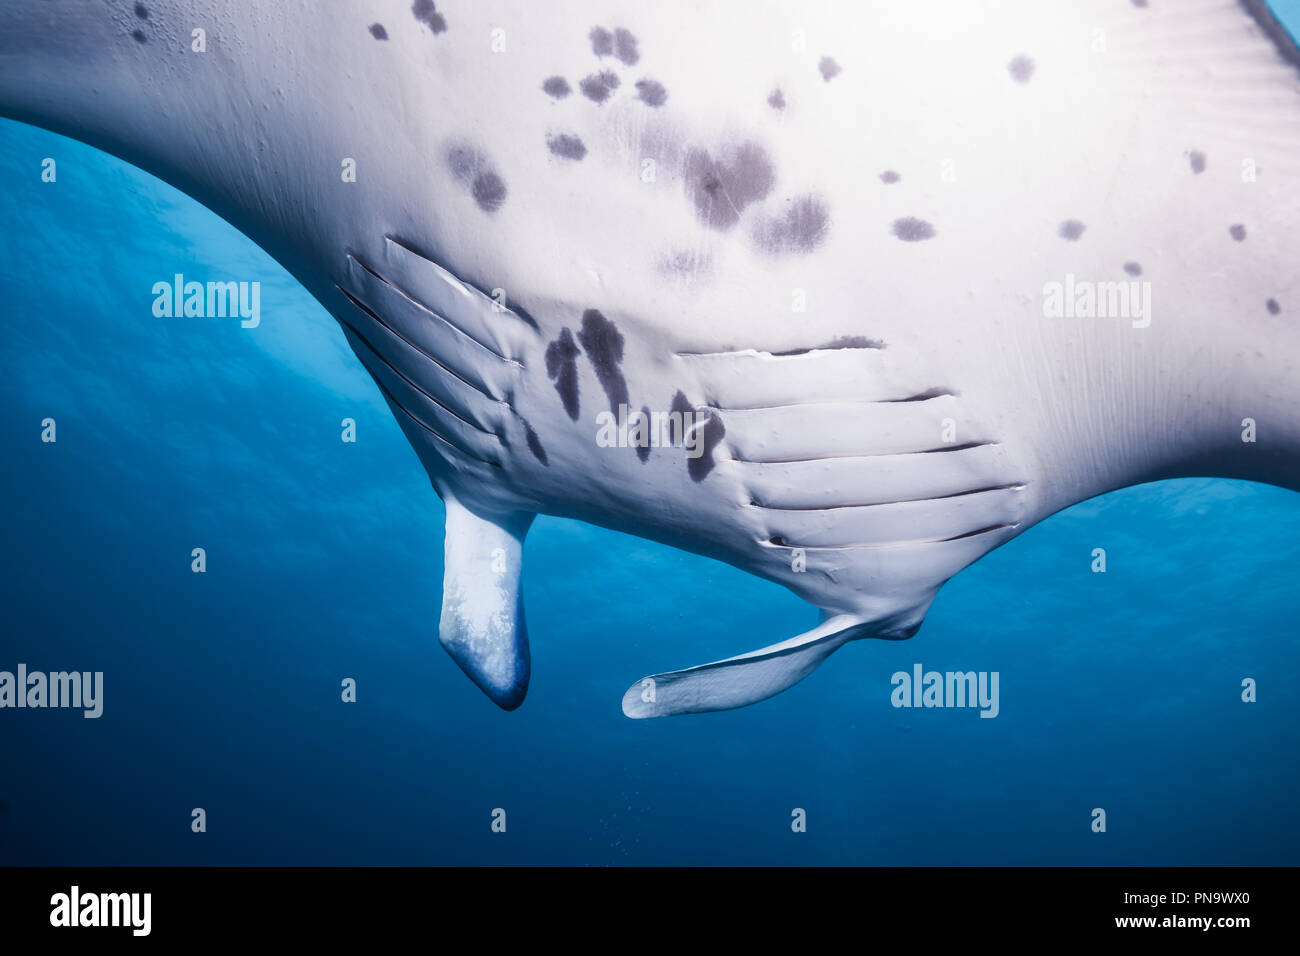 Manta ray. nuotare nell'oceano blu. Isola di Yap Gli Stati Federati di Micronesia (close up) Foto Stock